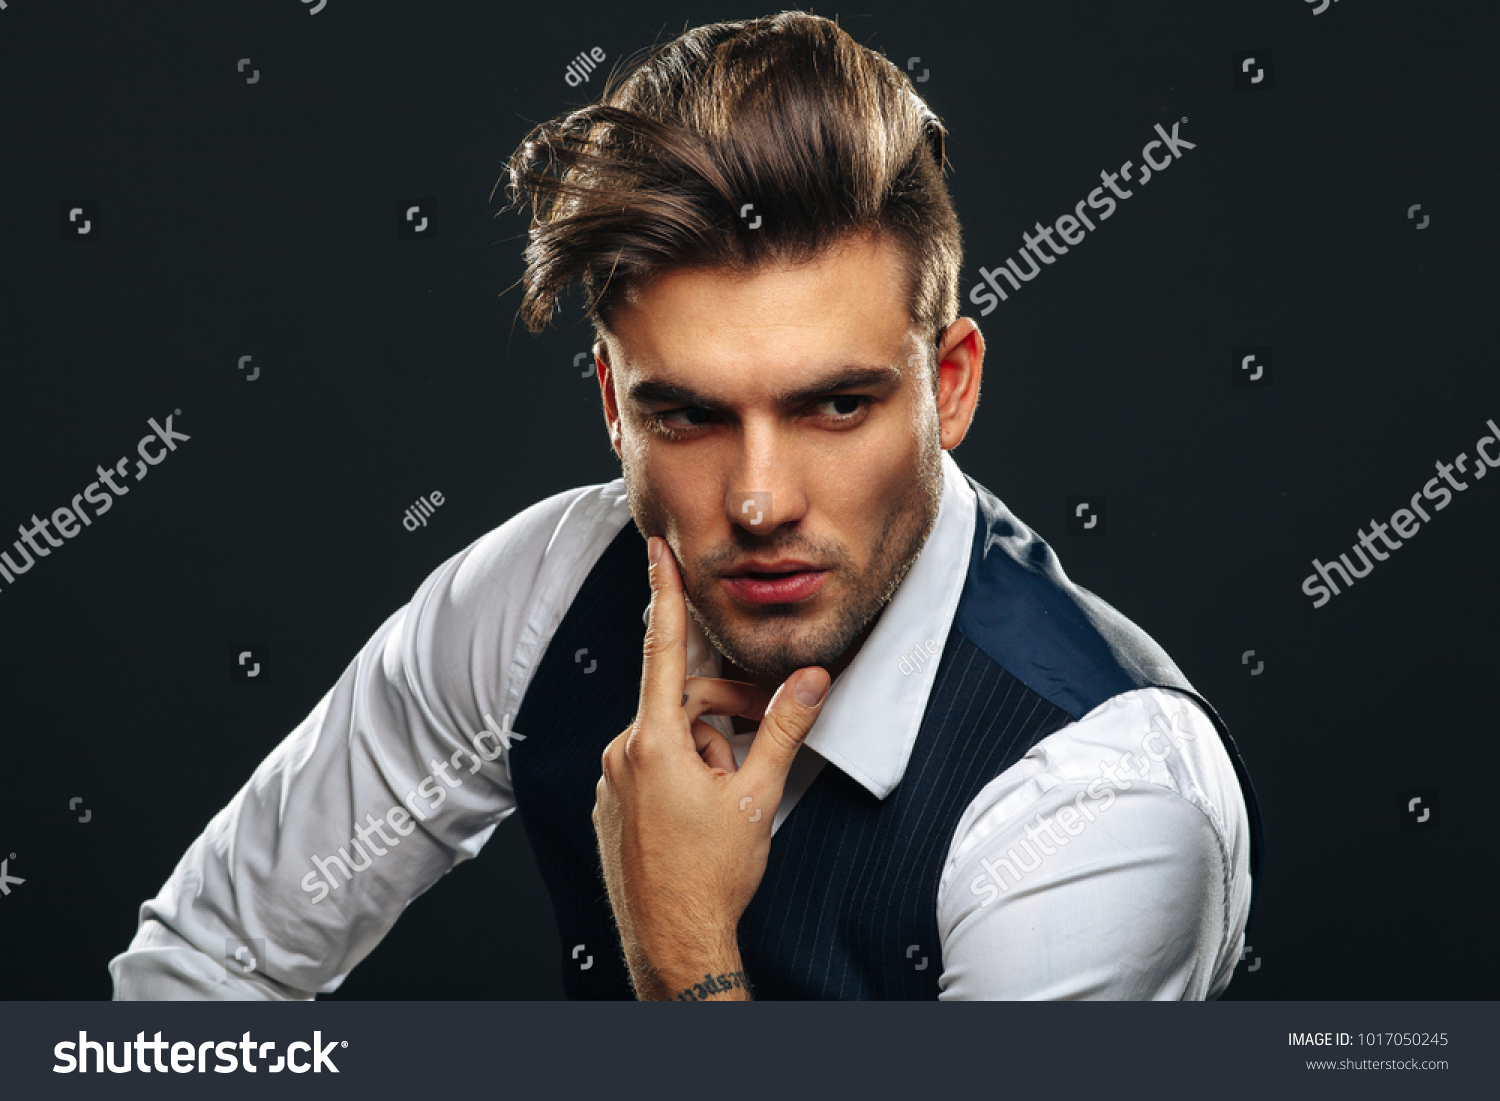 Portrait od handsome man in studio on dark background #1017050245